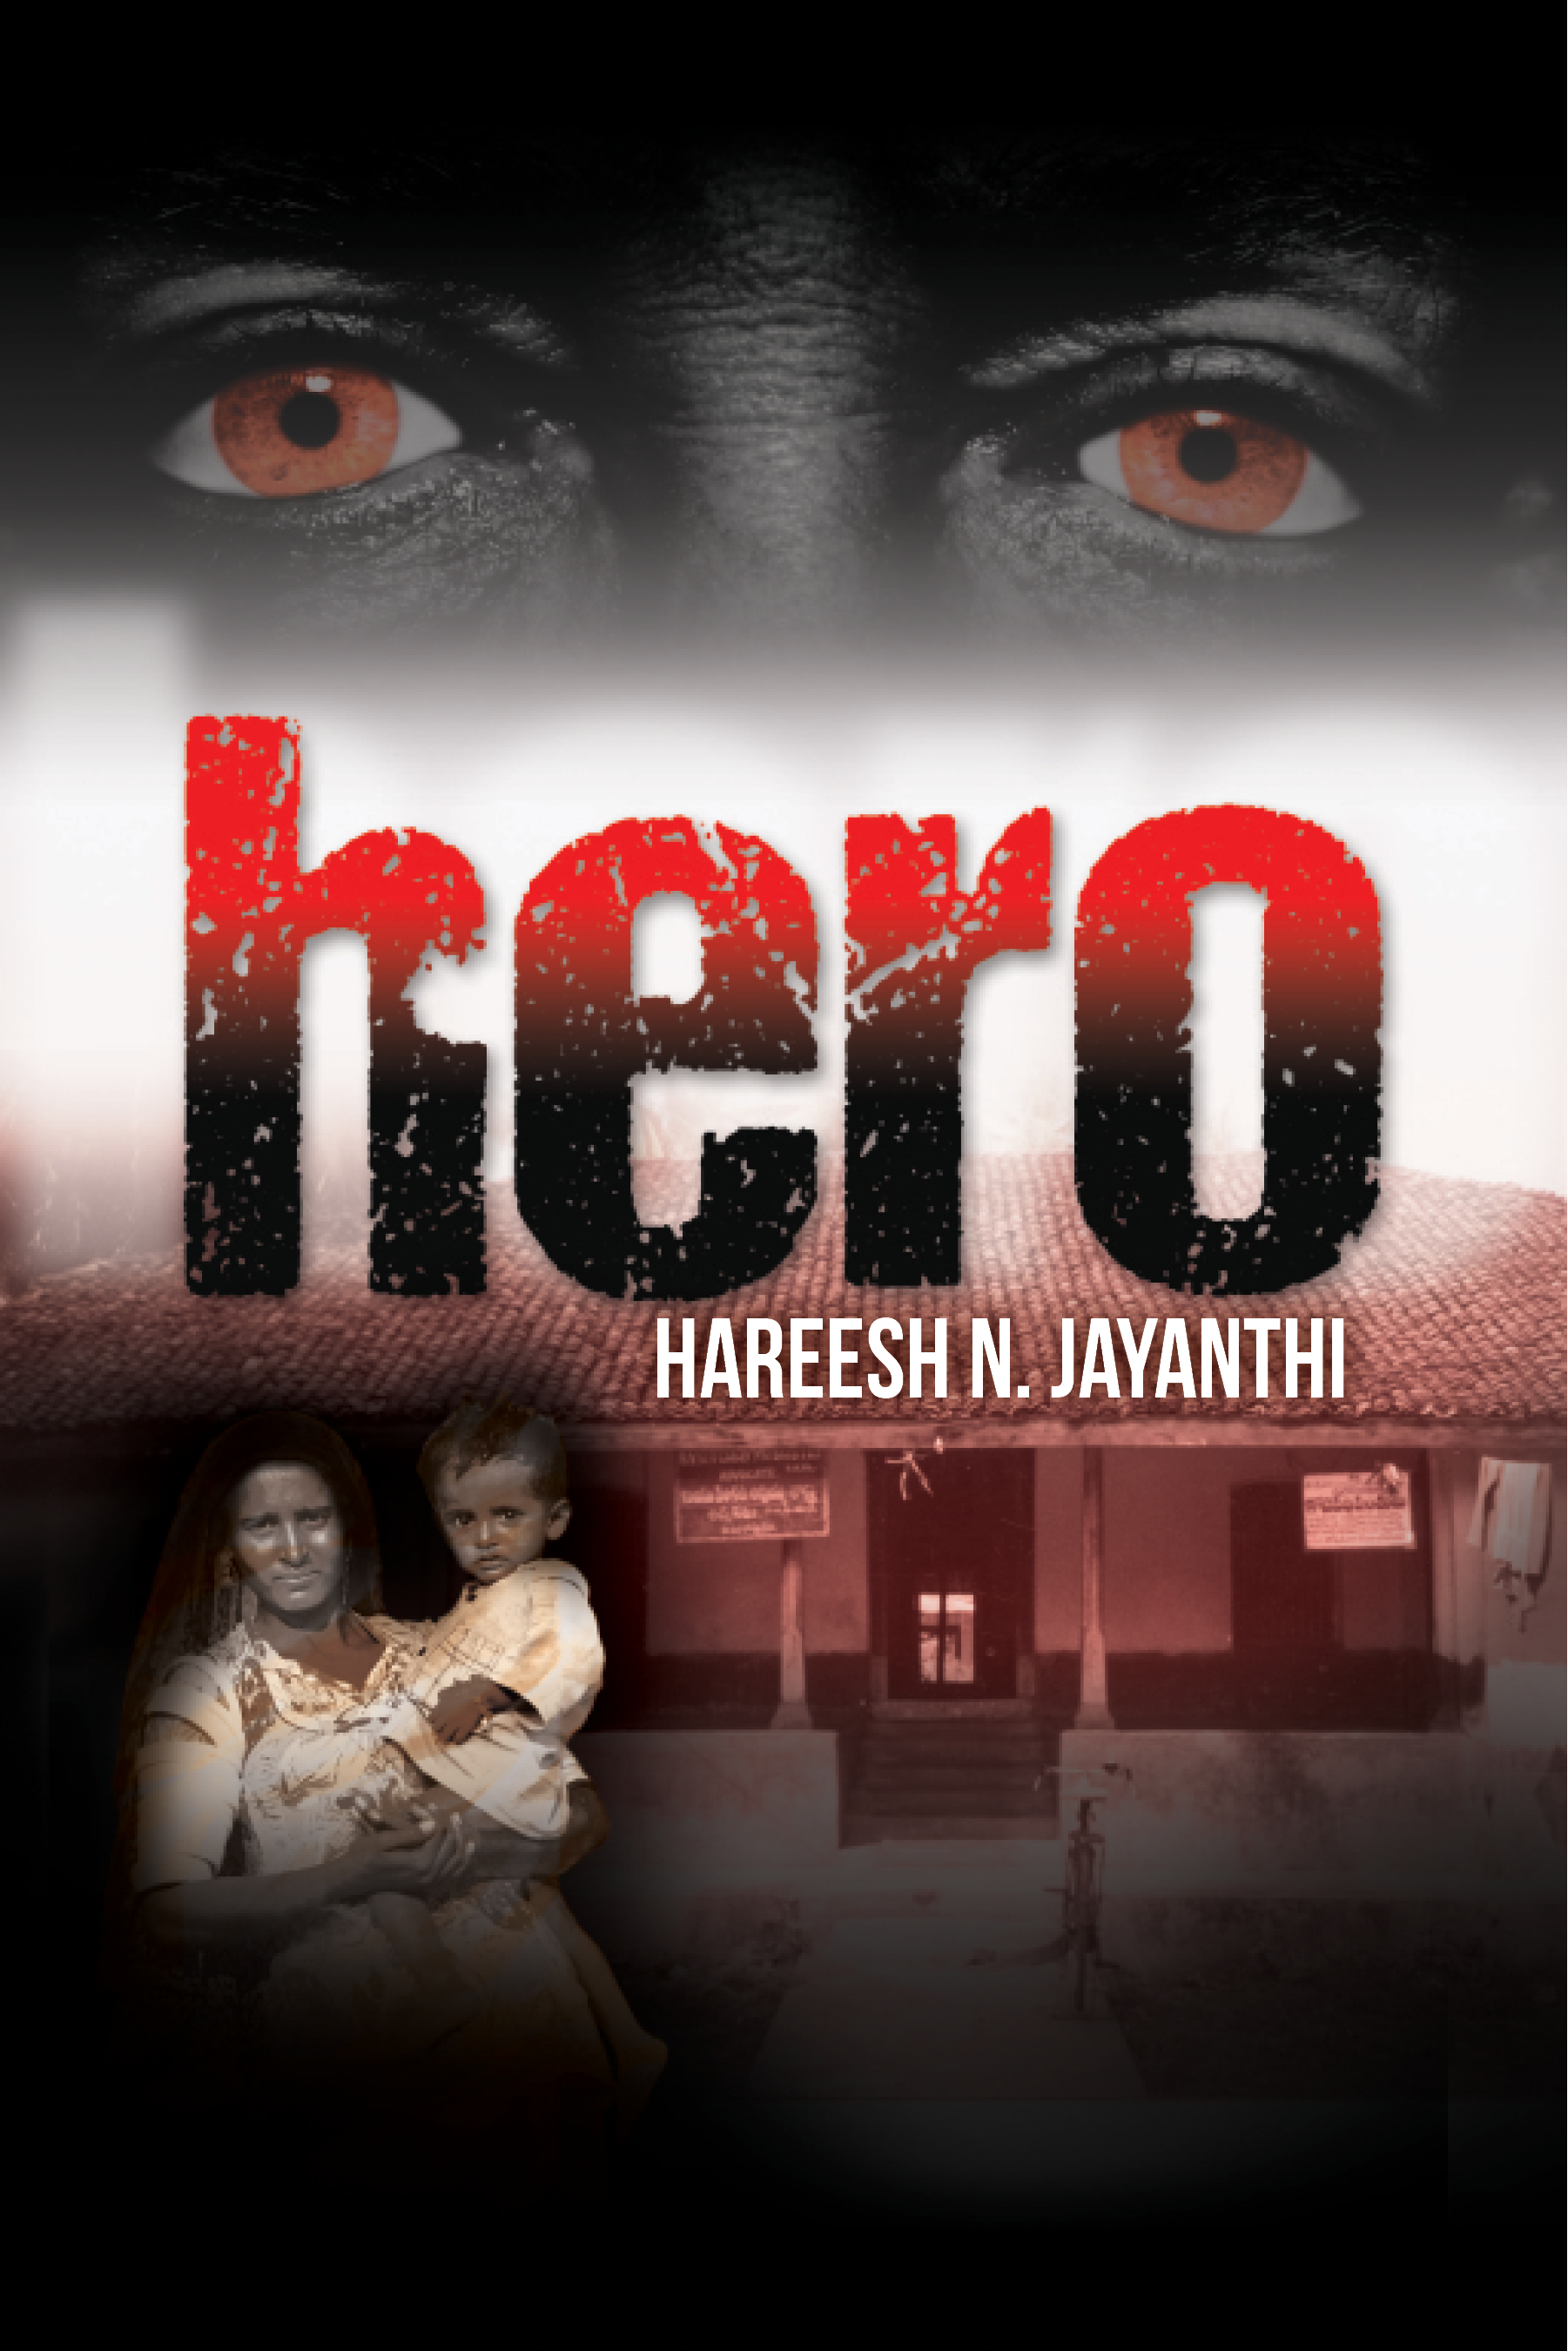 FREE: hero by Hareesh Jayanthi